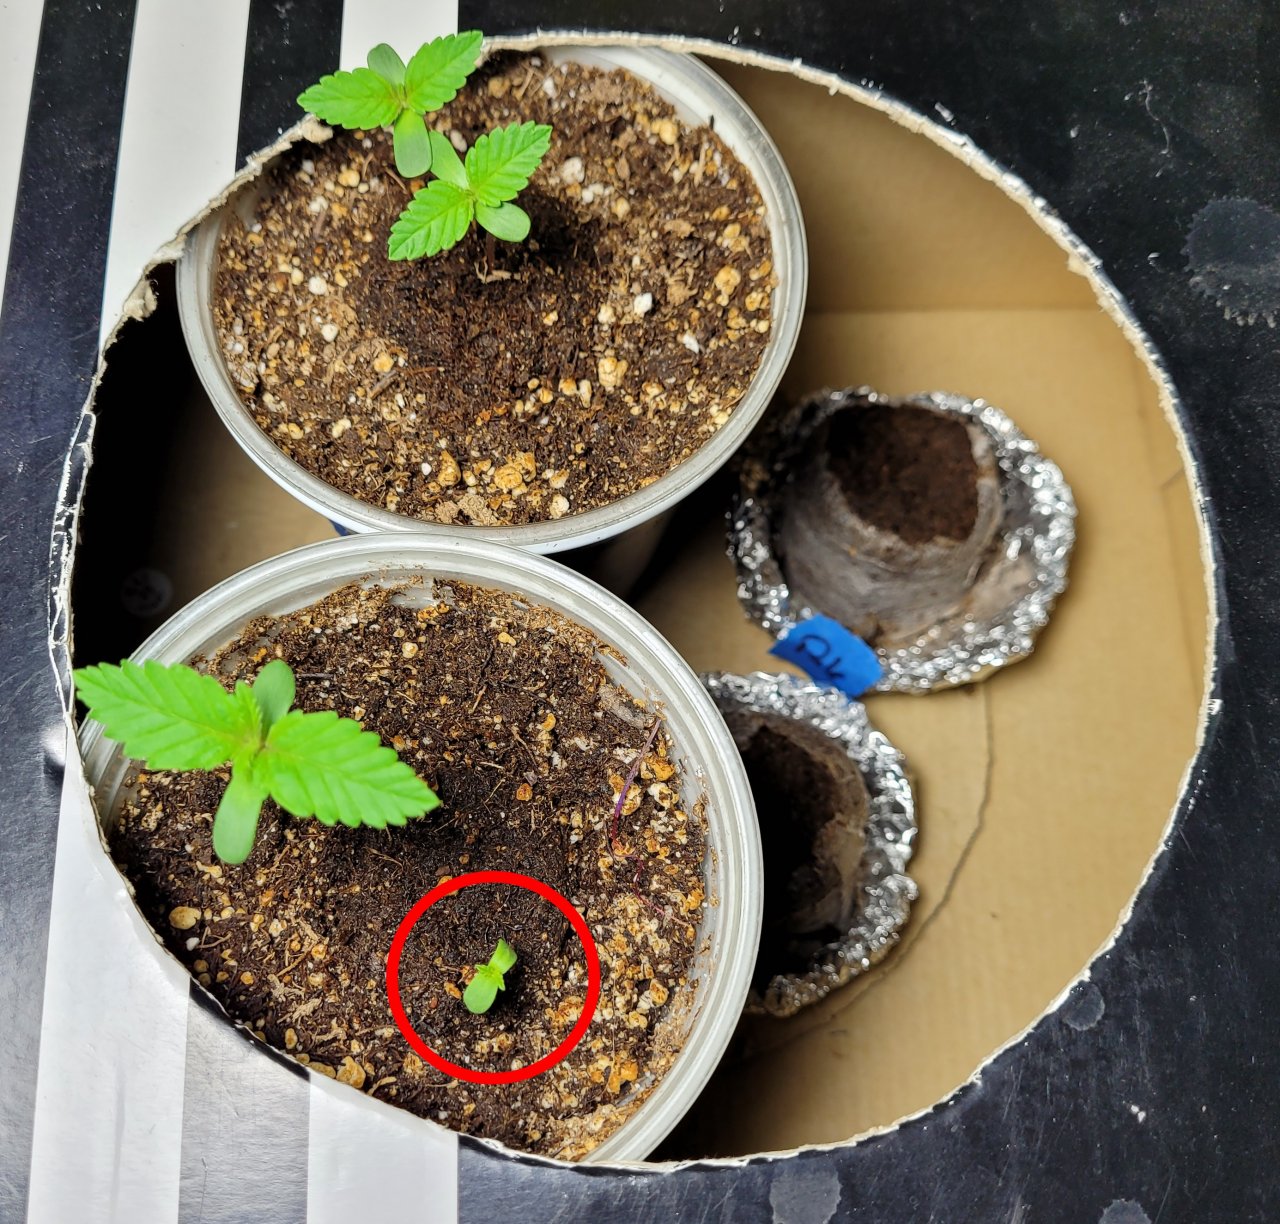 20220720_075007 Sour G seed germination test.jpg